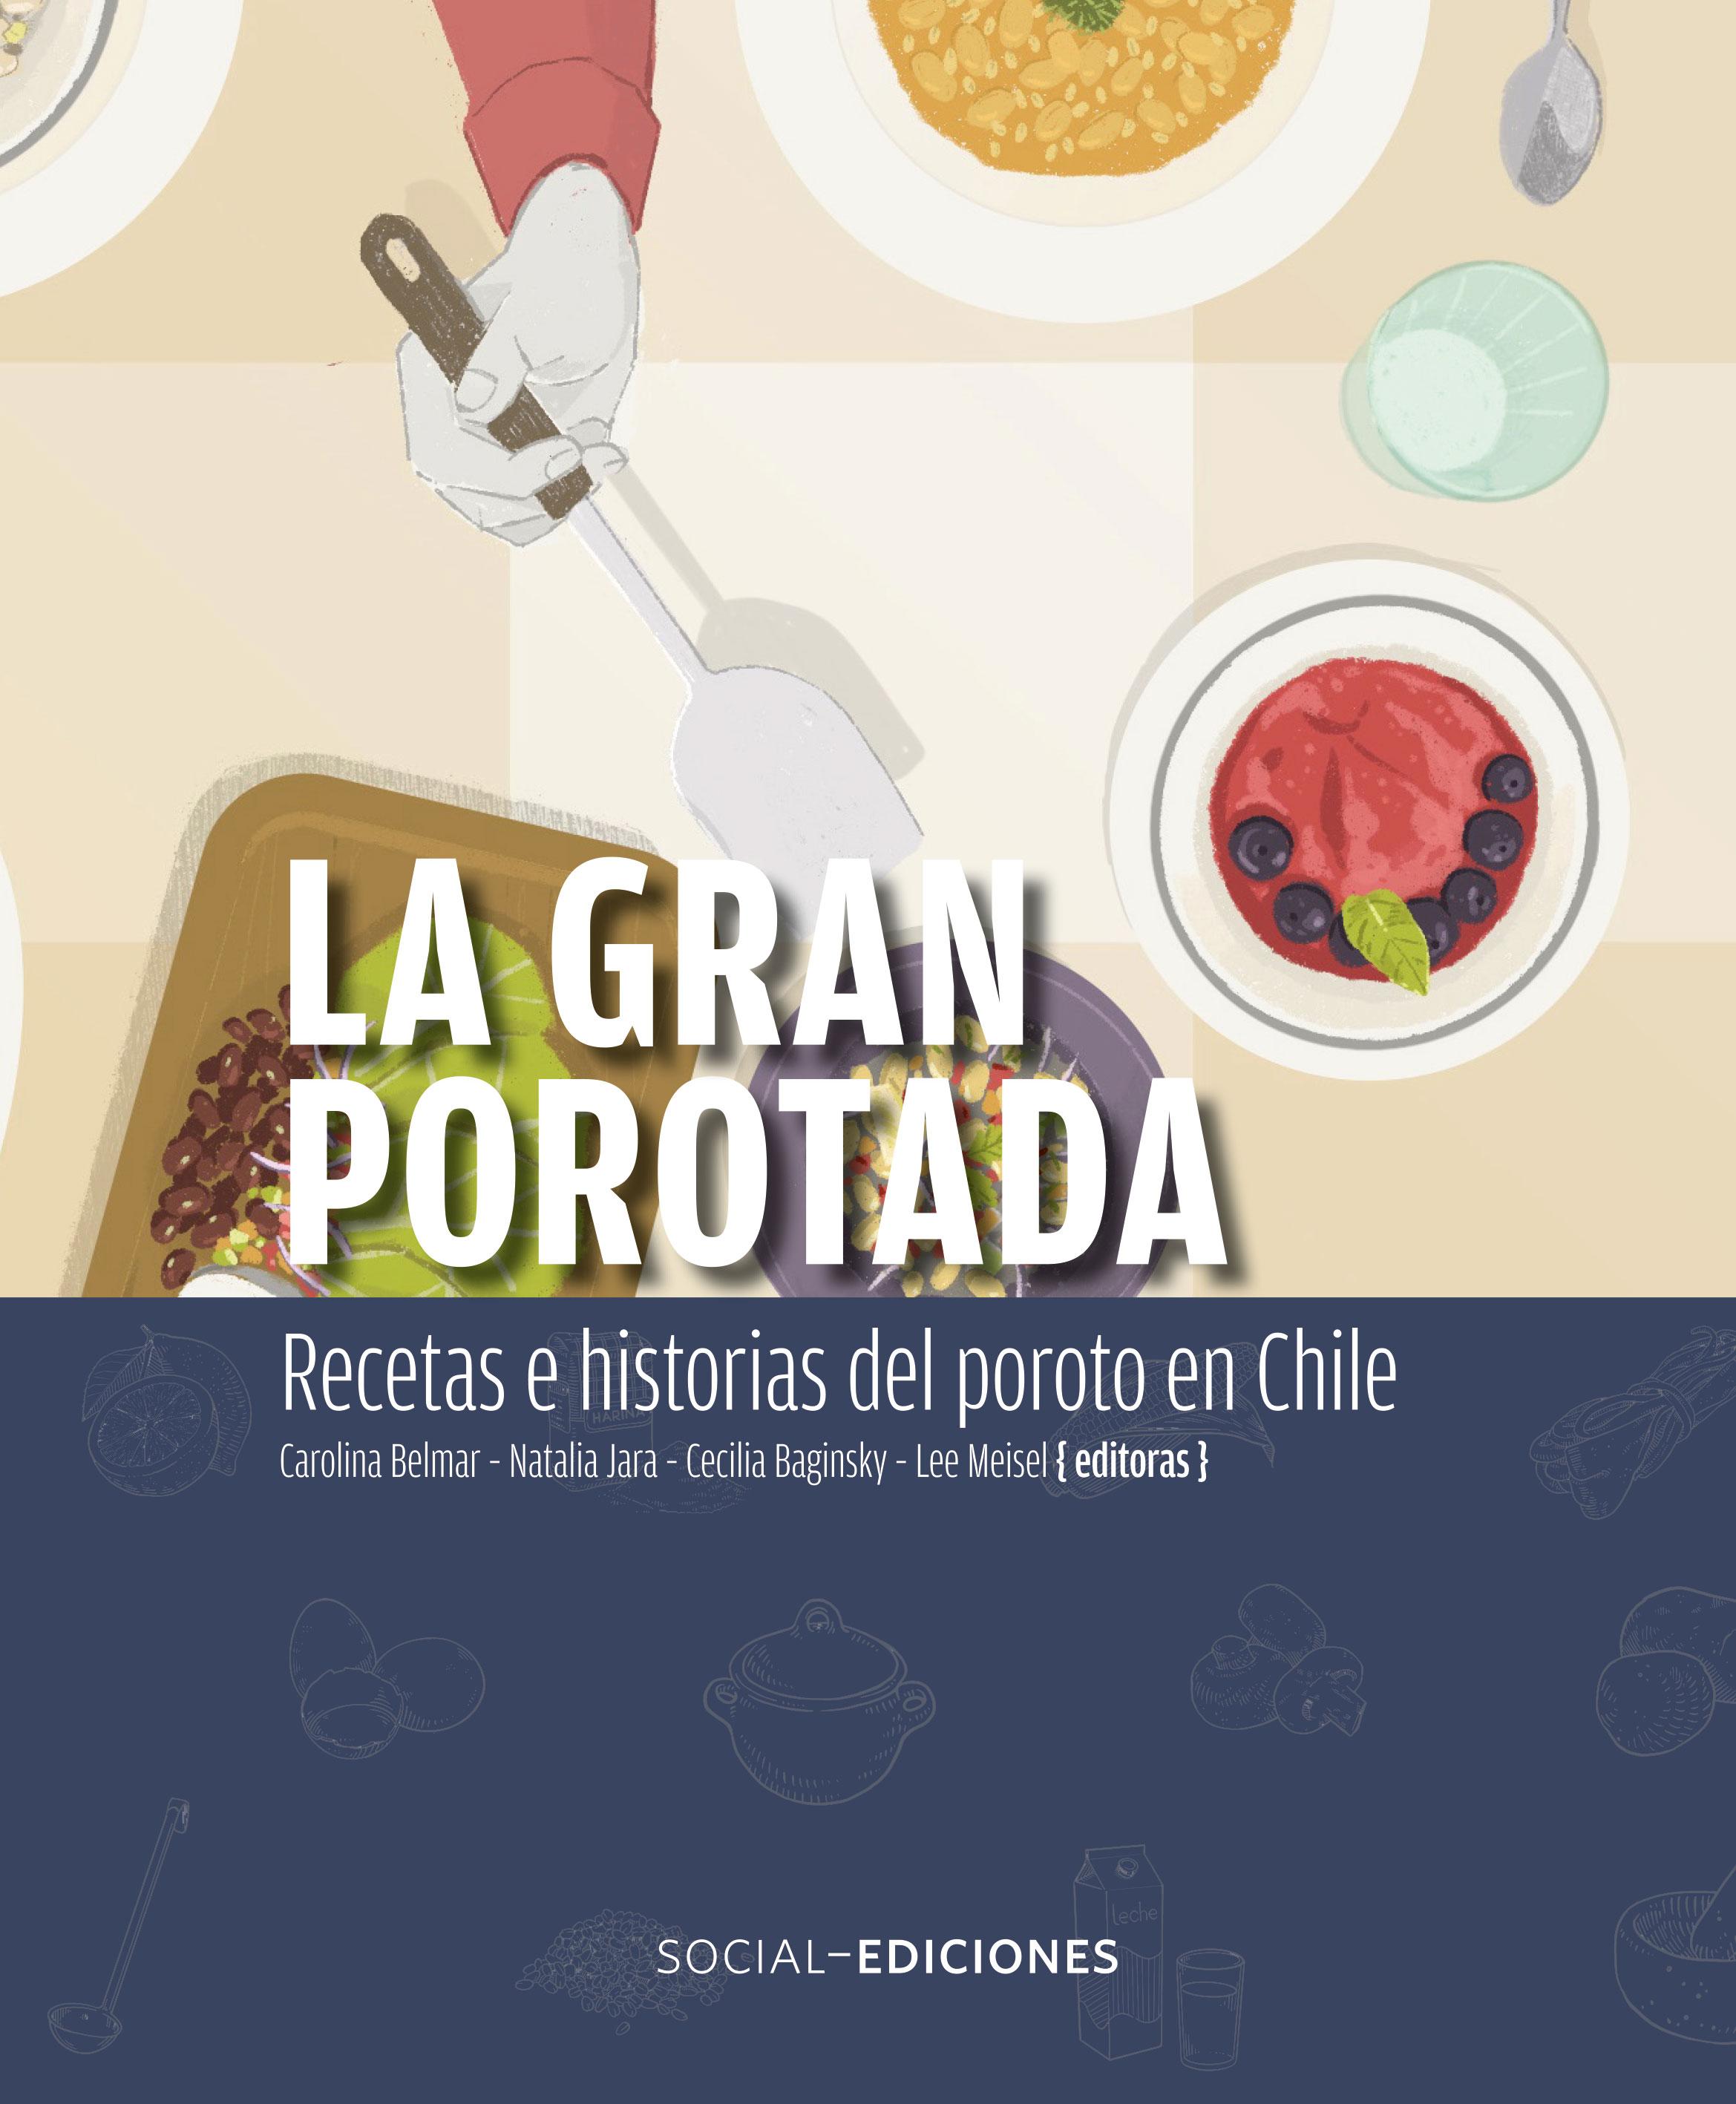 La Gran Porotada: Recetas e historias del poroto en Chile